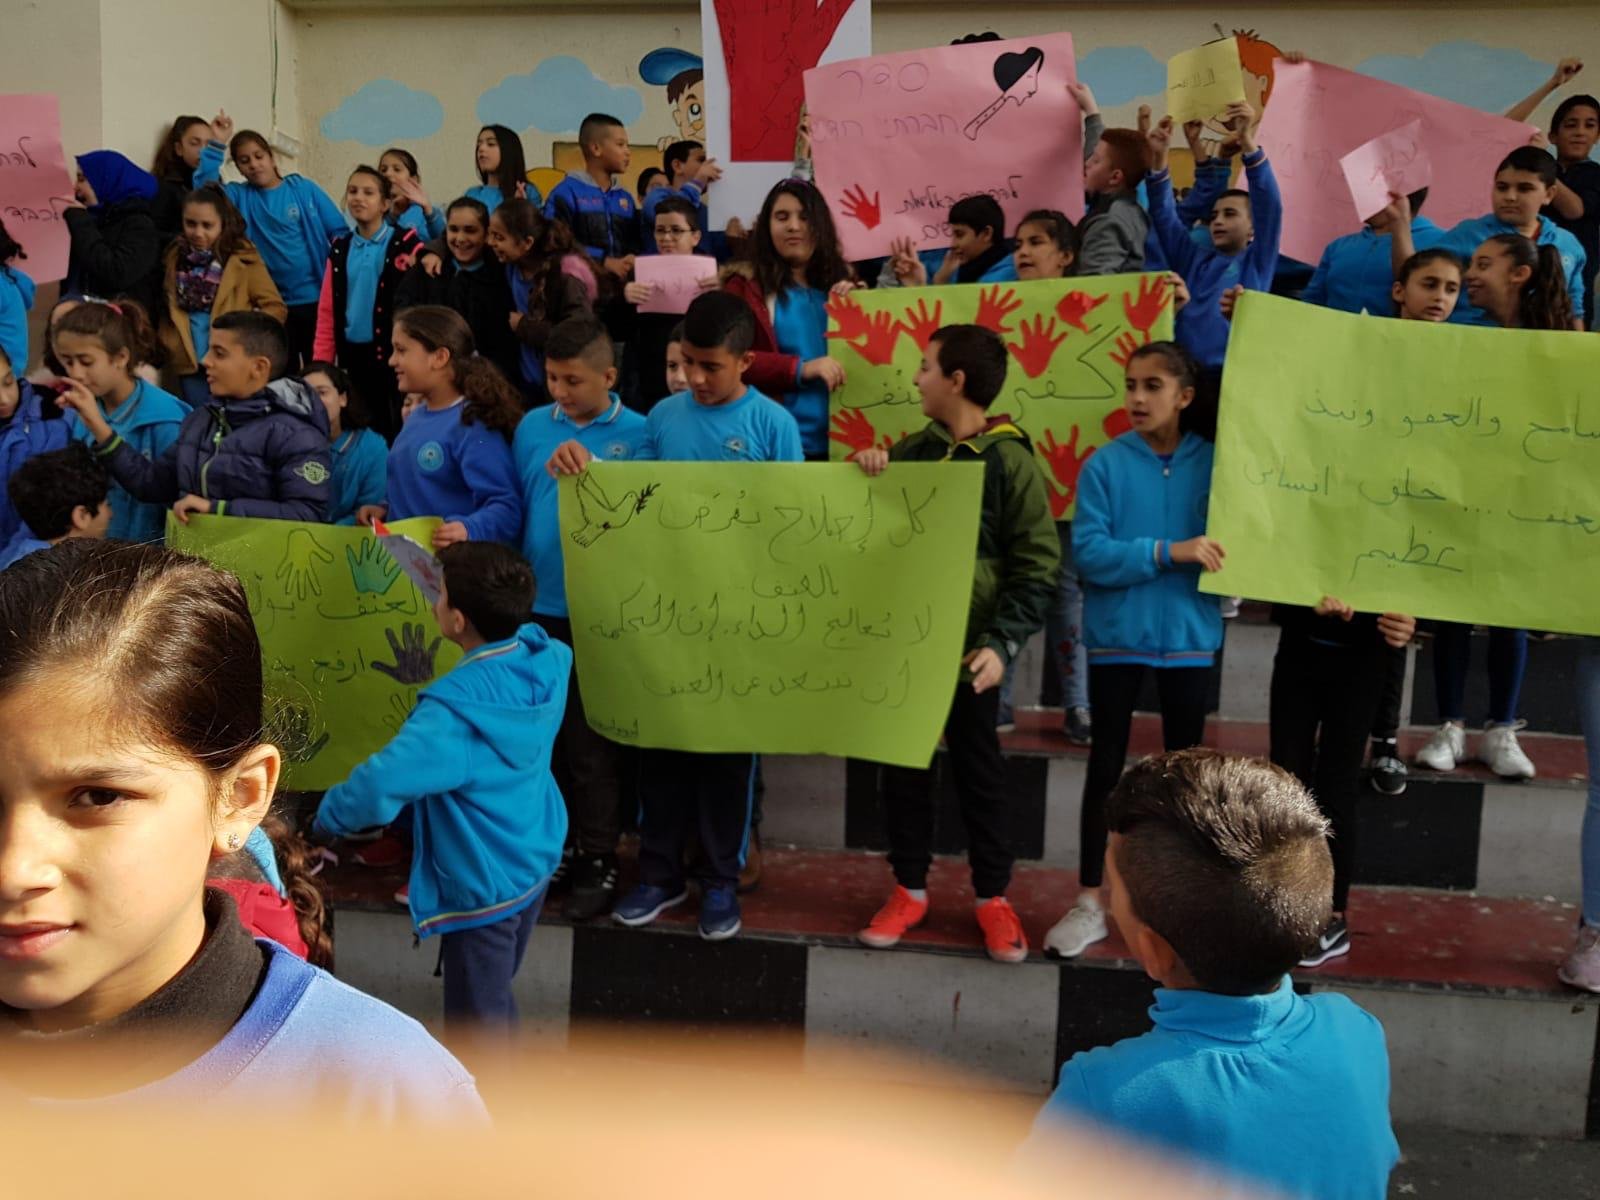 وقفةٌ احتجاجية تضامنًا مع الاضراب ضد العنف في المدرسة الجماهيرية بير الامير الناصرة-1